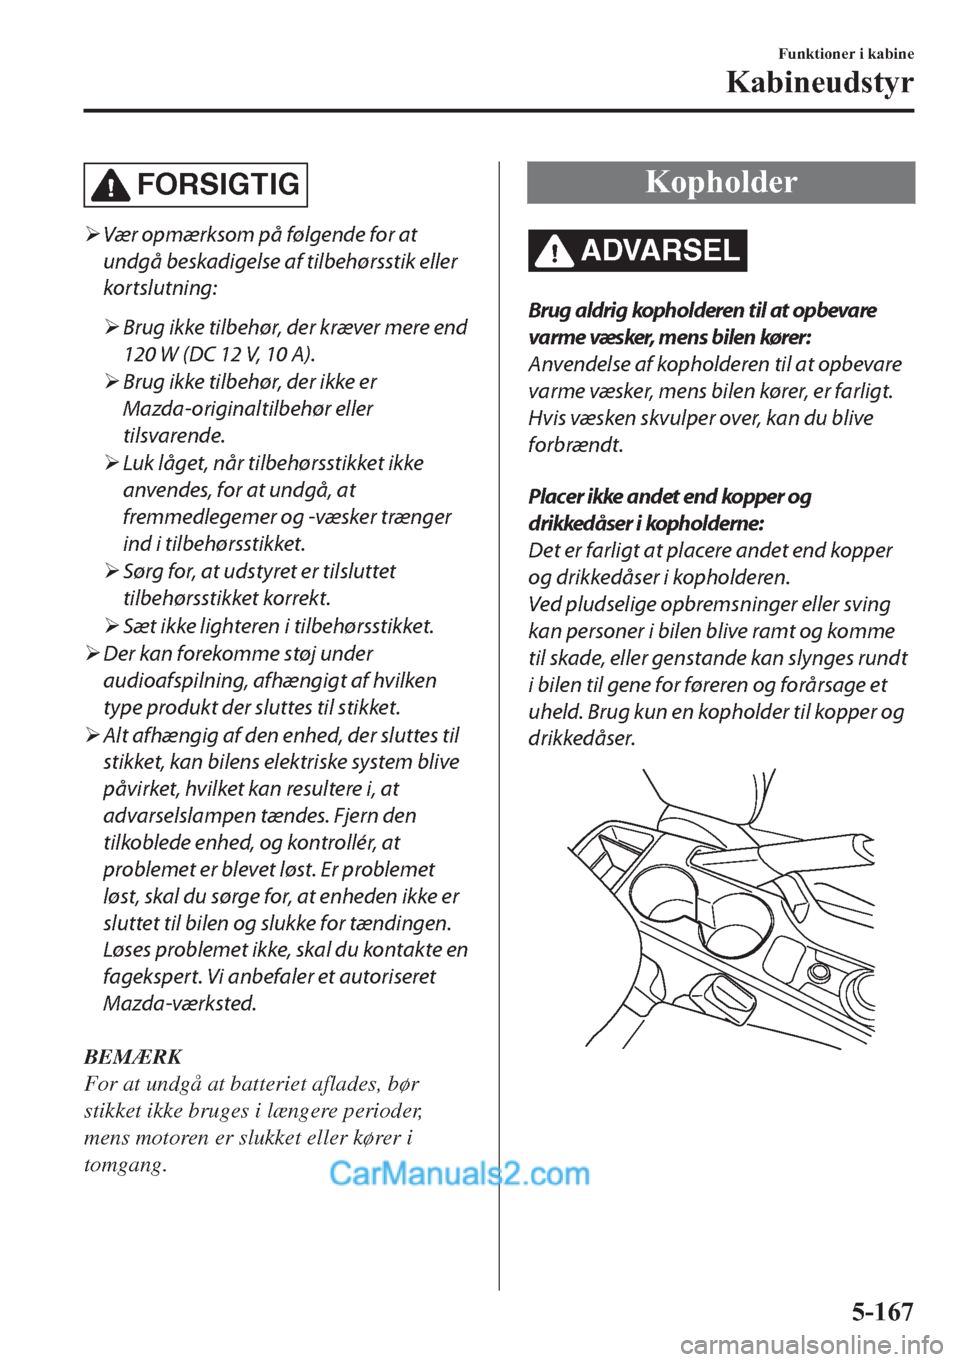 MAZDA MODEL 2 2019  Instruktionsbog (in Danish) FORSIGTIG
�¾Vær opmærksom på følgende for at
undgå beskadigelse af tilbehørsstik eller
kortslutning:
�¾Brug ikke tilbehør, der kræver mere end
120 W (DC 12 V, 10 A).
�¾Brug ikke tilbehør, 